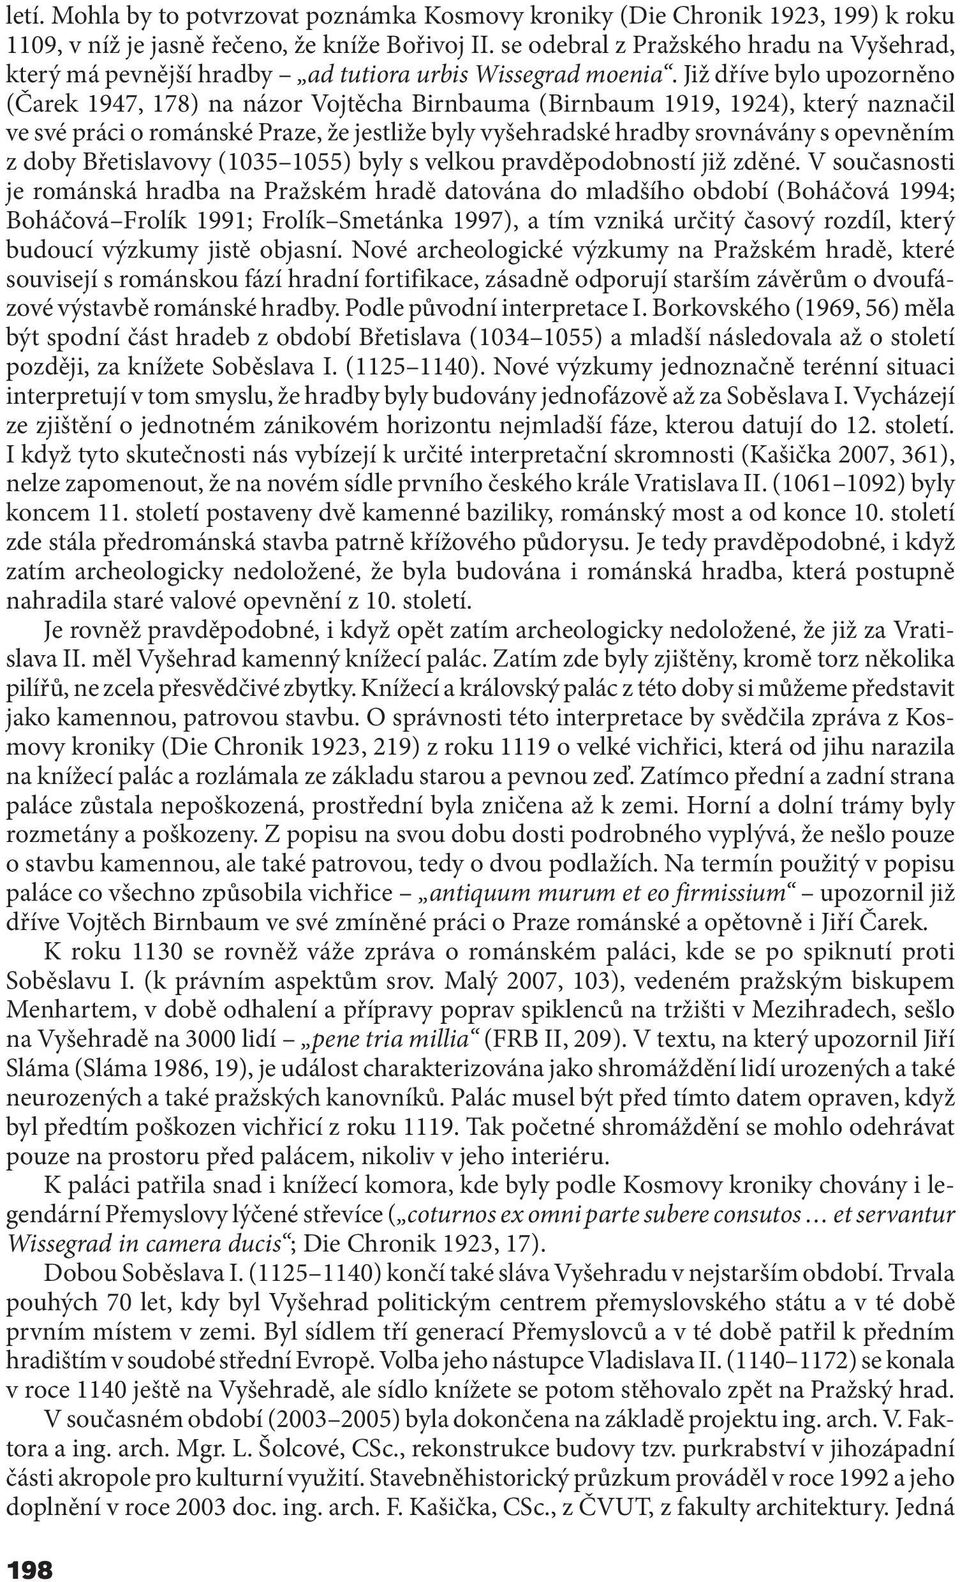 Již dříve bylo upozorněno (Čarek 1947, 178) na názor Vojtěcha Birnbauma (Birnbaum 1919, 1924), který naznačil ve své práci o románské Praze, že jestliže byly vyšehradské hradby srovnávány s opevněním